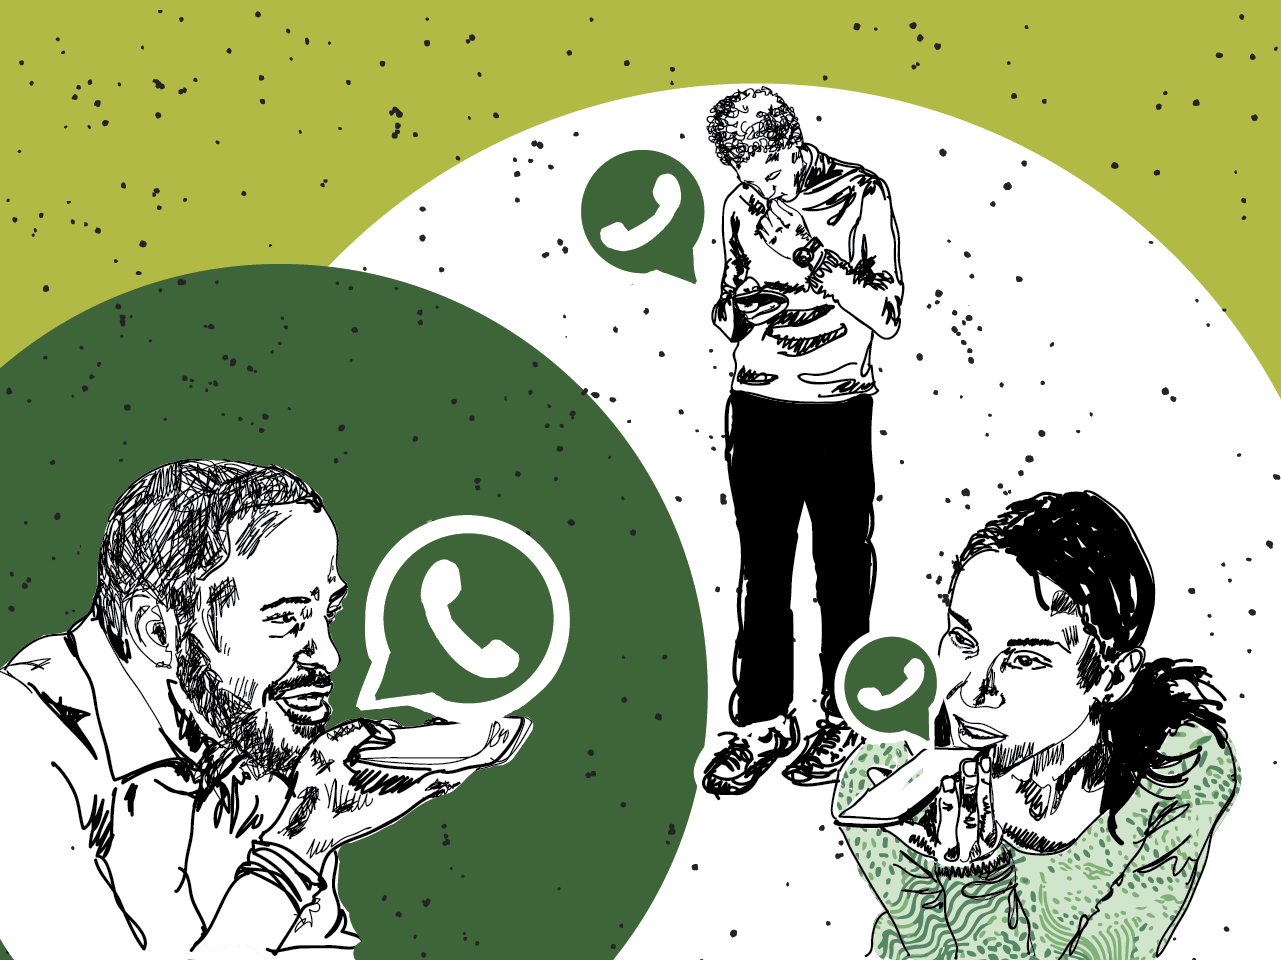 Mensagens de áudio evoluem no WhatsApp